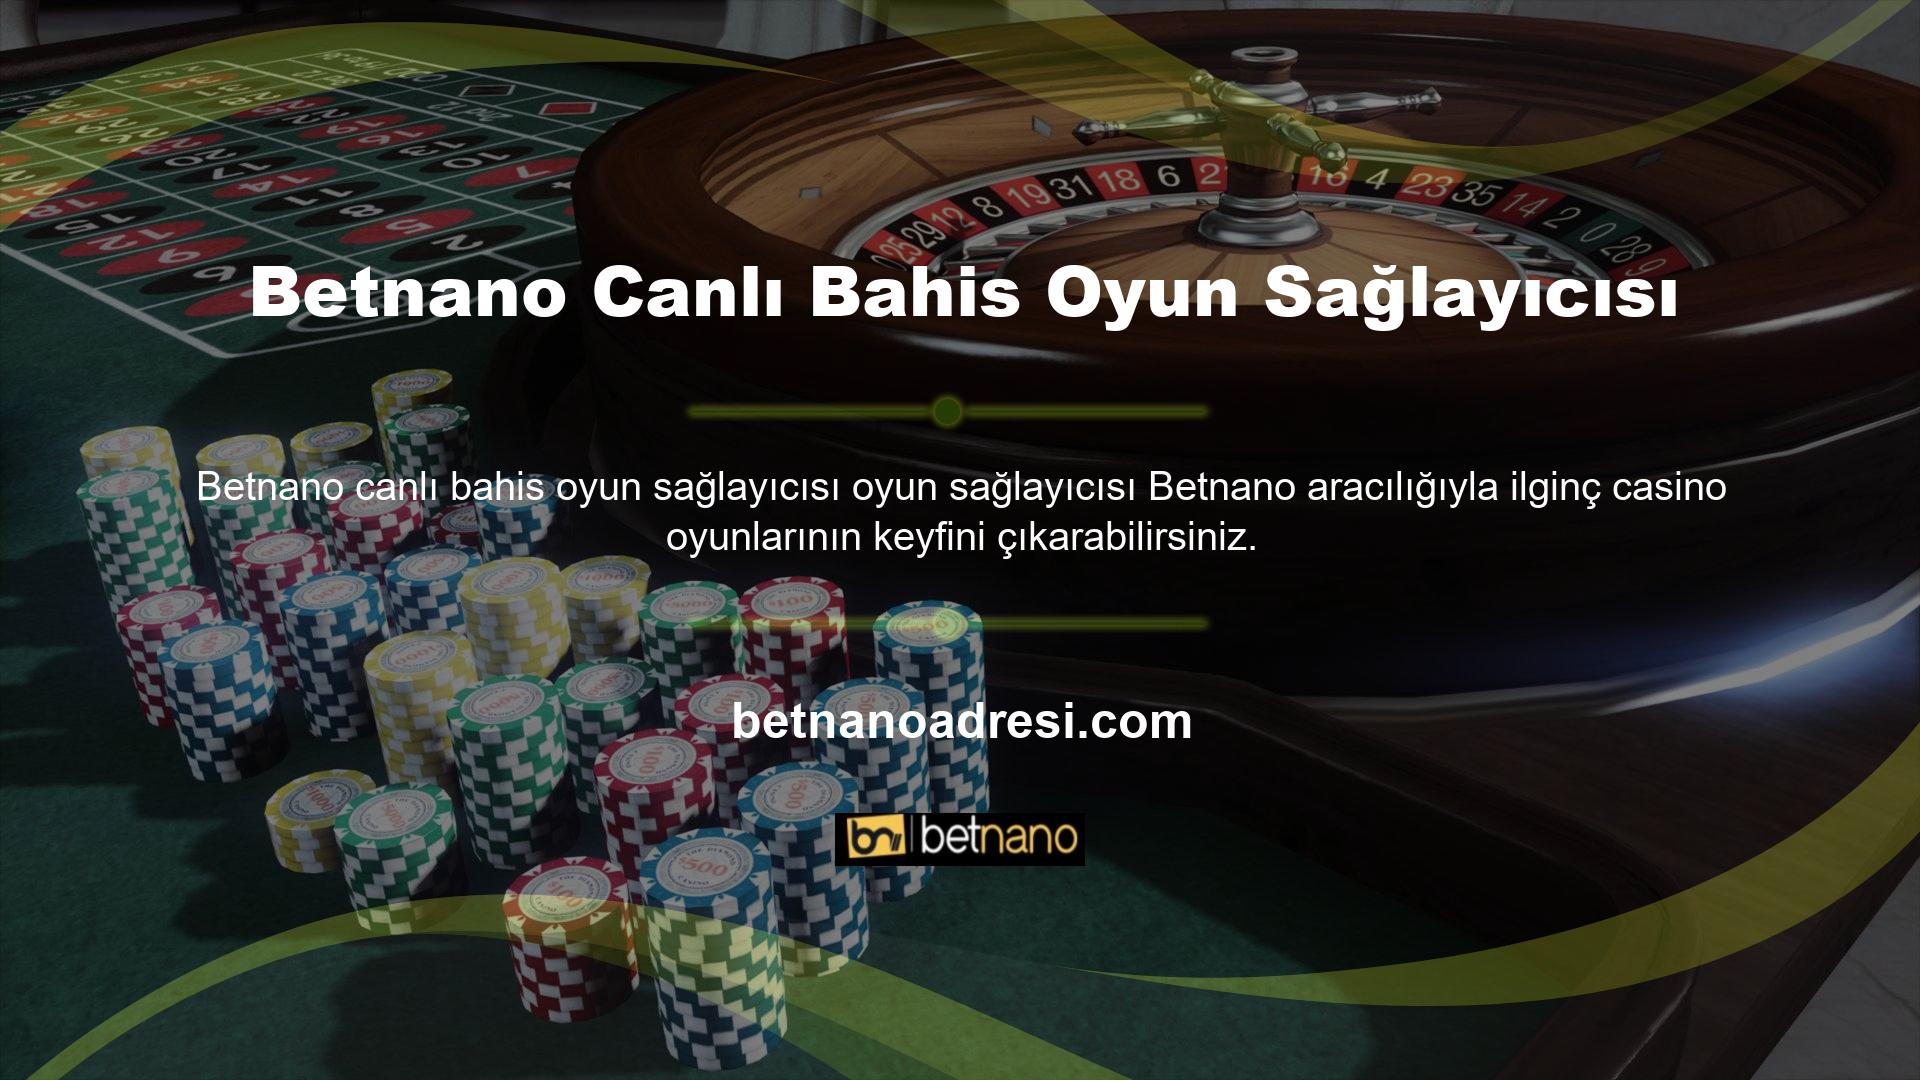 Betnano Twitter hesabından sitenin ana sayfasını ziyaret etmeniz yeterli